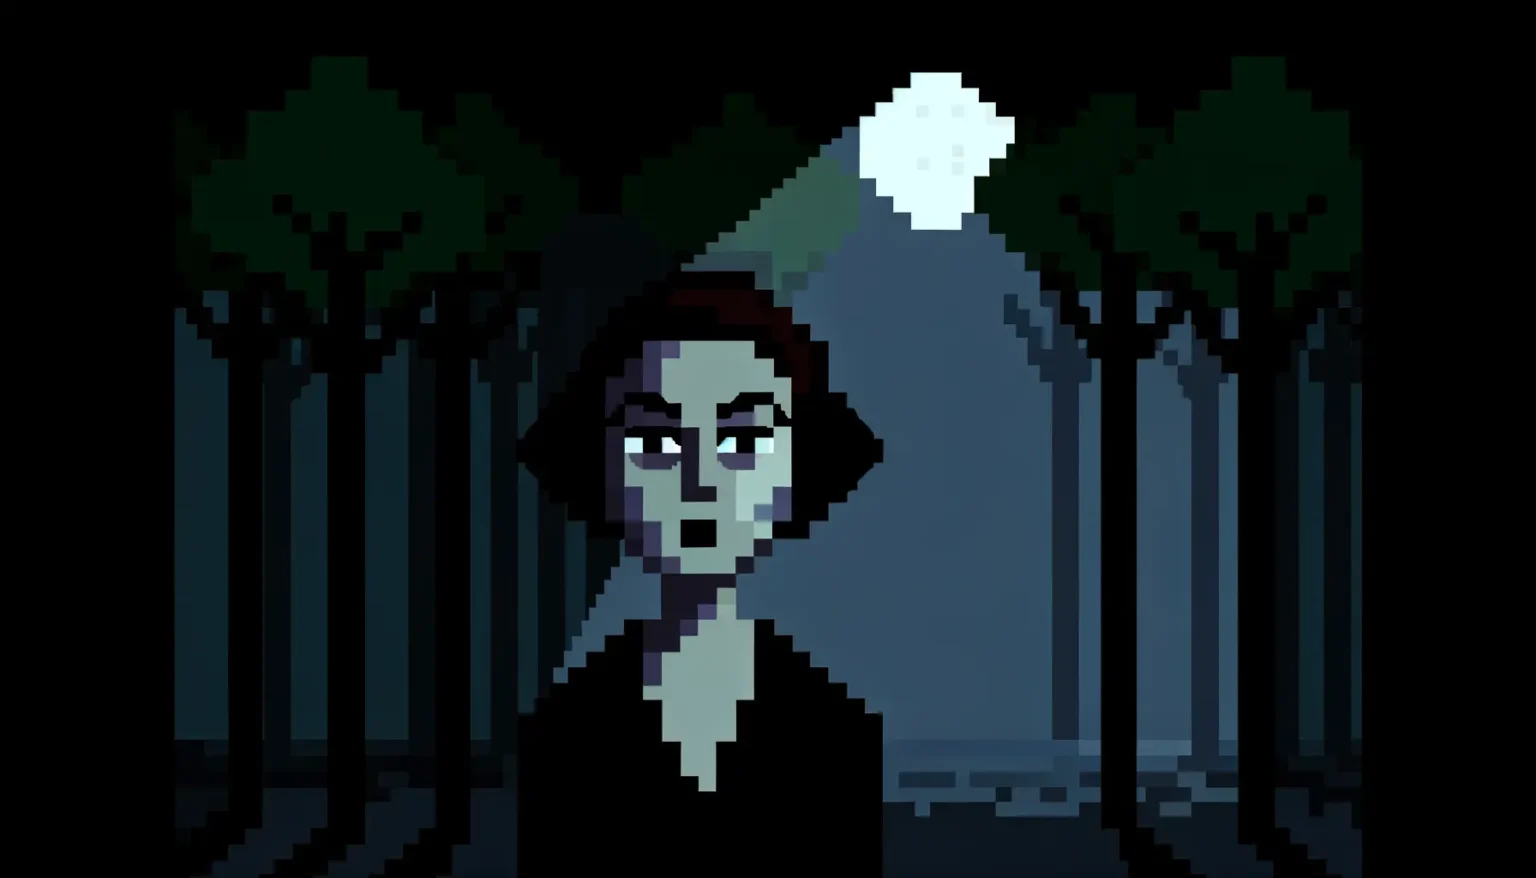 Pixelart eines weiblichen Charakters im Vordergrund mit grünlichen Haut- und Haartönen, die in einem dunklen Wald steht. Hinter ihr scheint Mondlicht durch die Bäume.